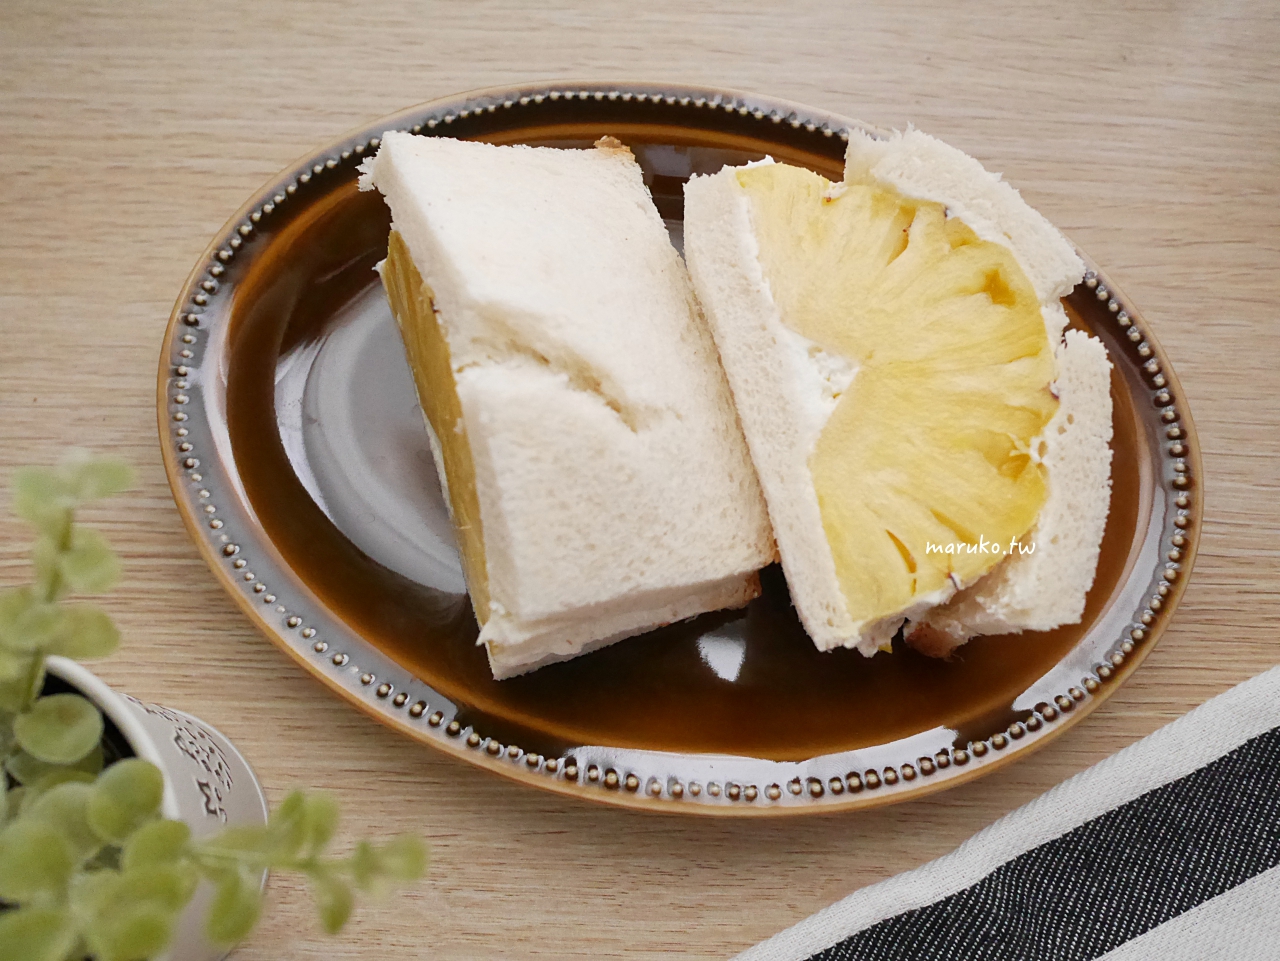 【食譜】鳳梨三明治 夏天用水果做三明治可以這樣吃